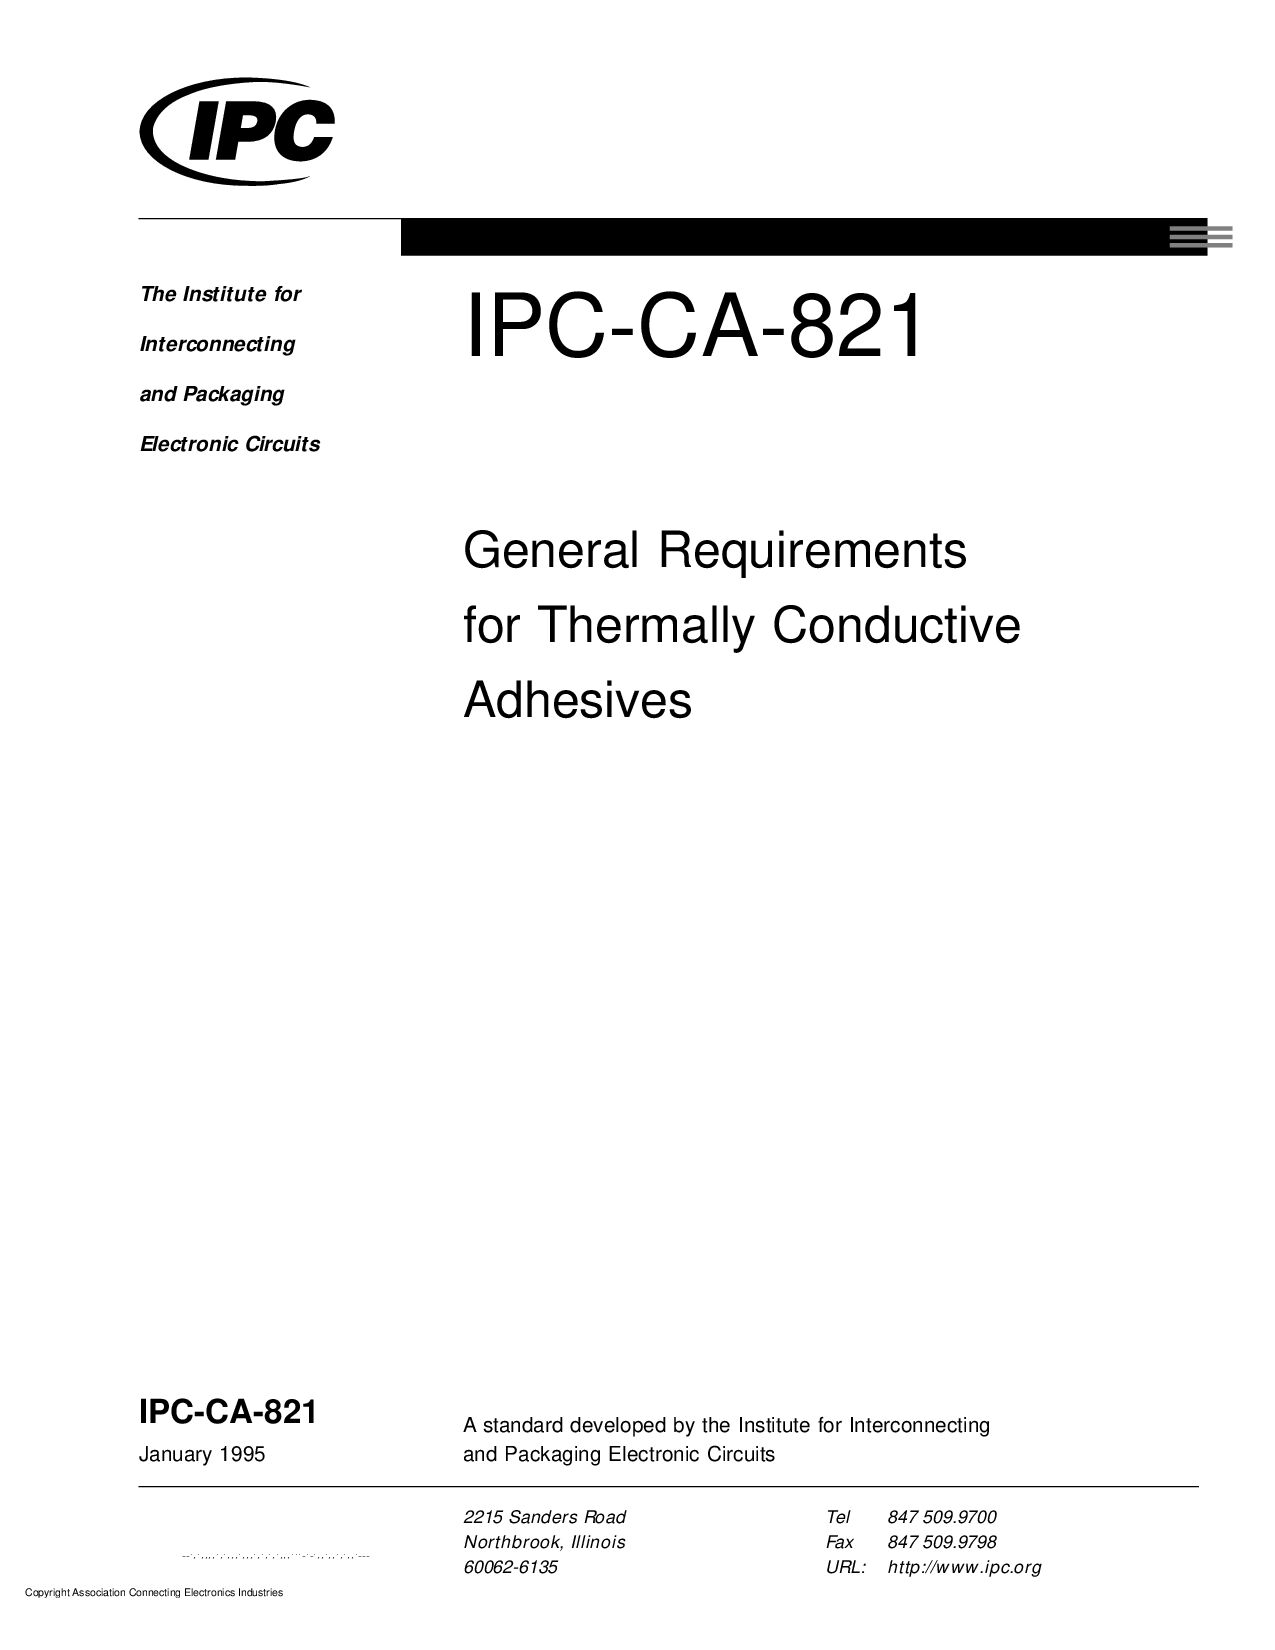 IPC CA-821-1995